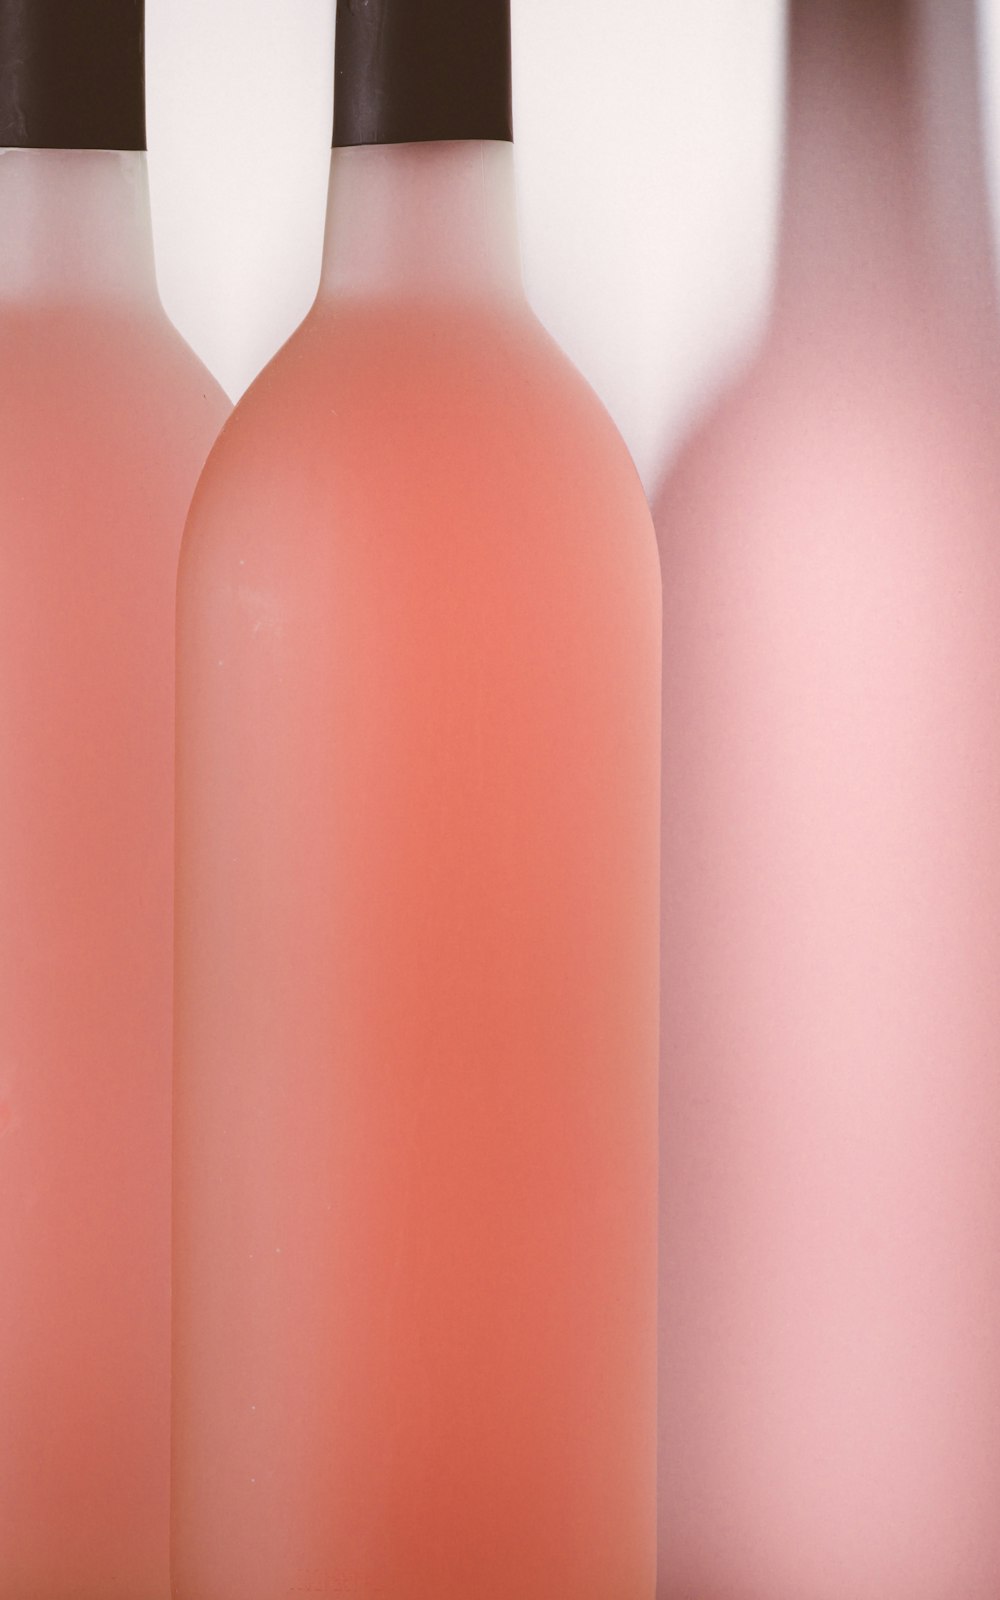 ピンクと白のペットボトル